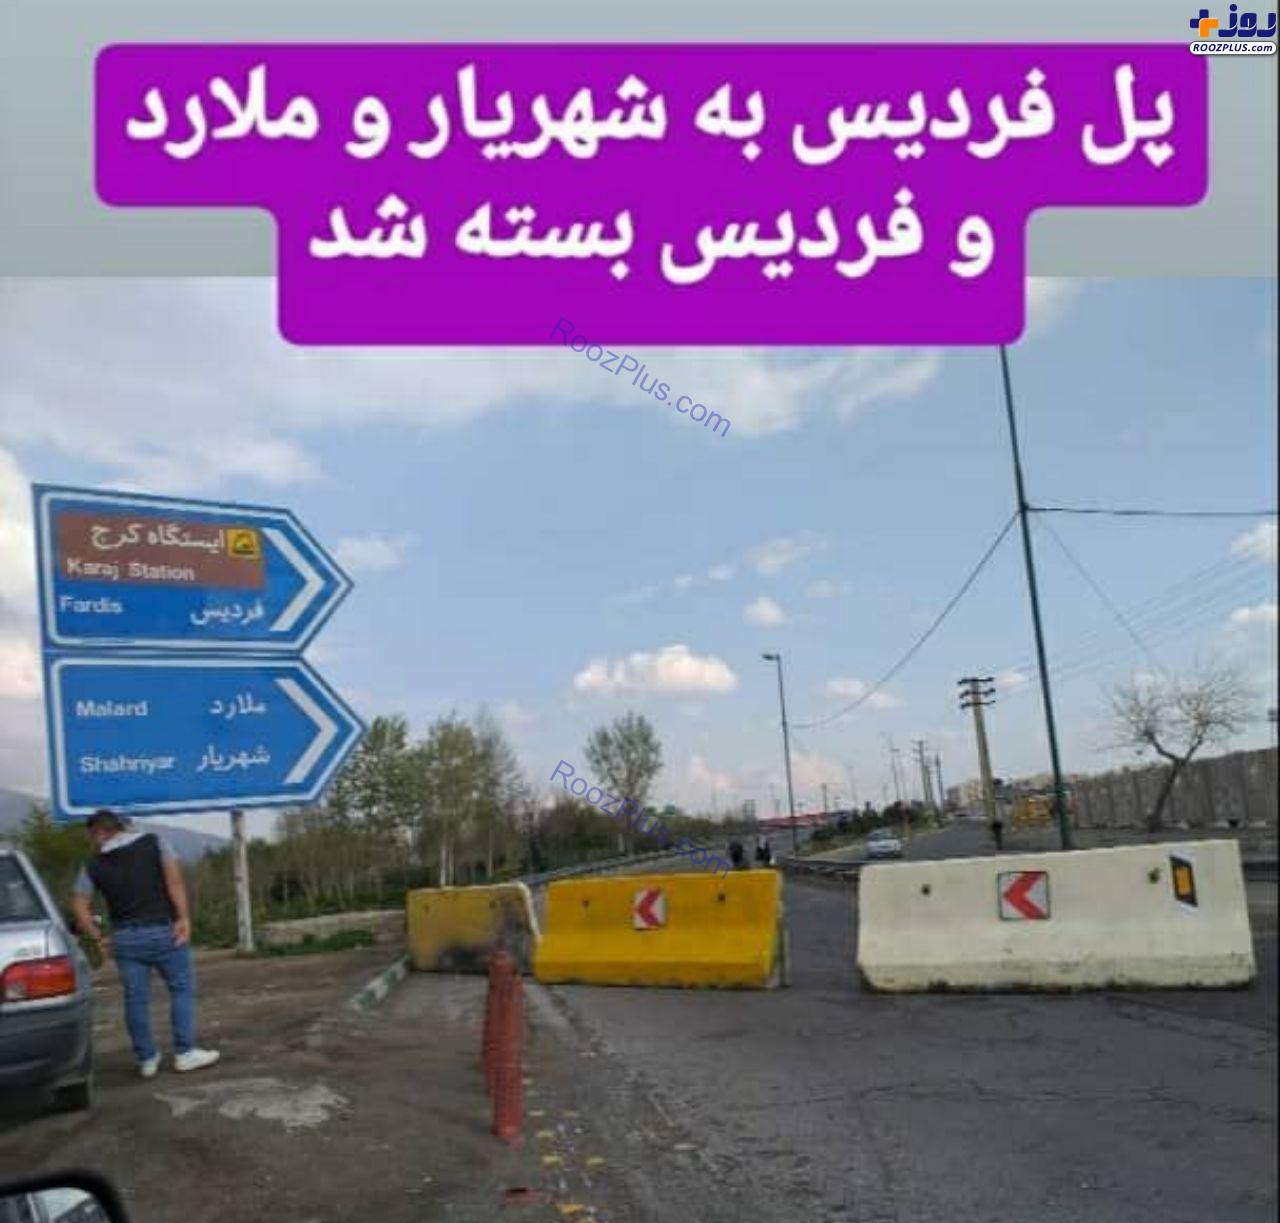 تصاویر منتشر شده از مسدود شدن ورودی و خروجی های شهر کرج